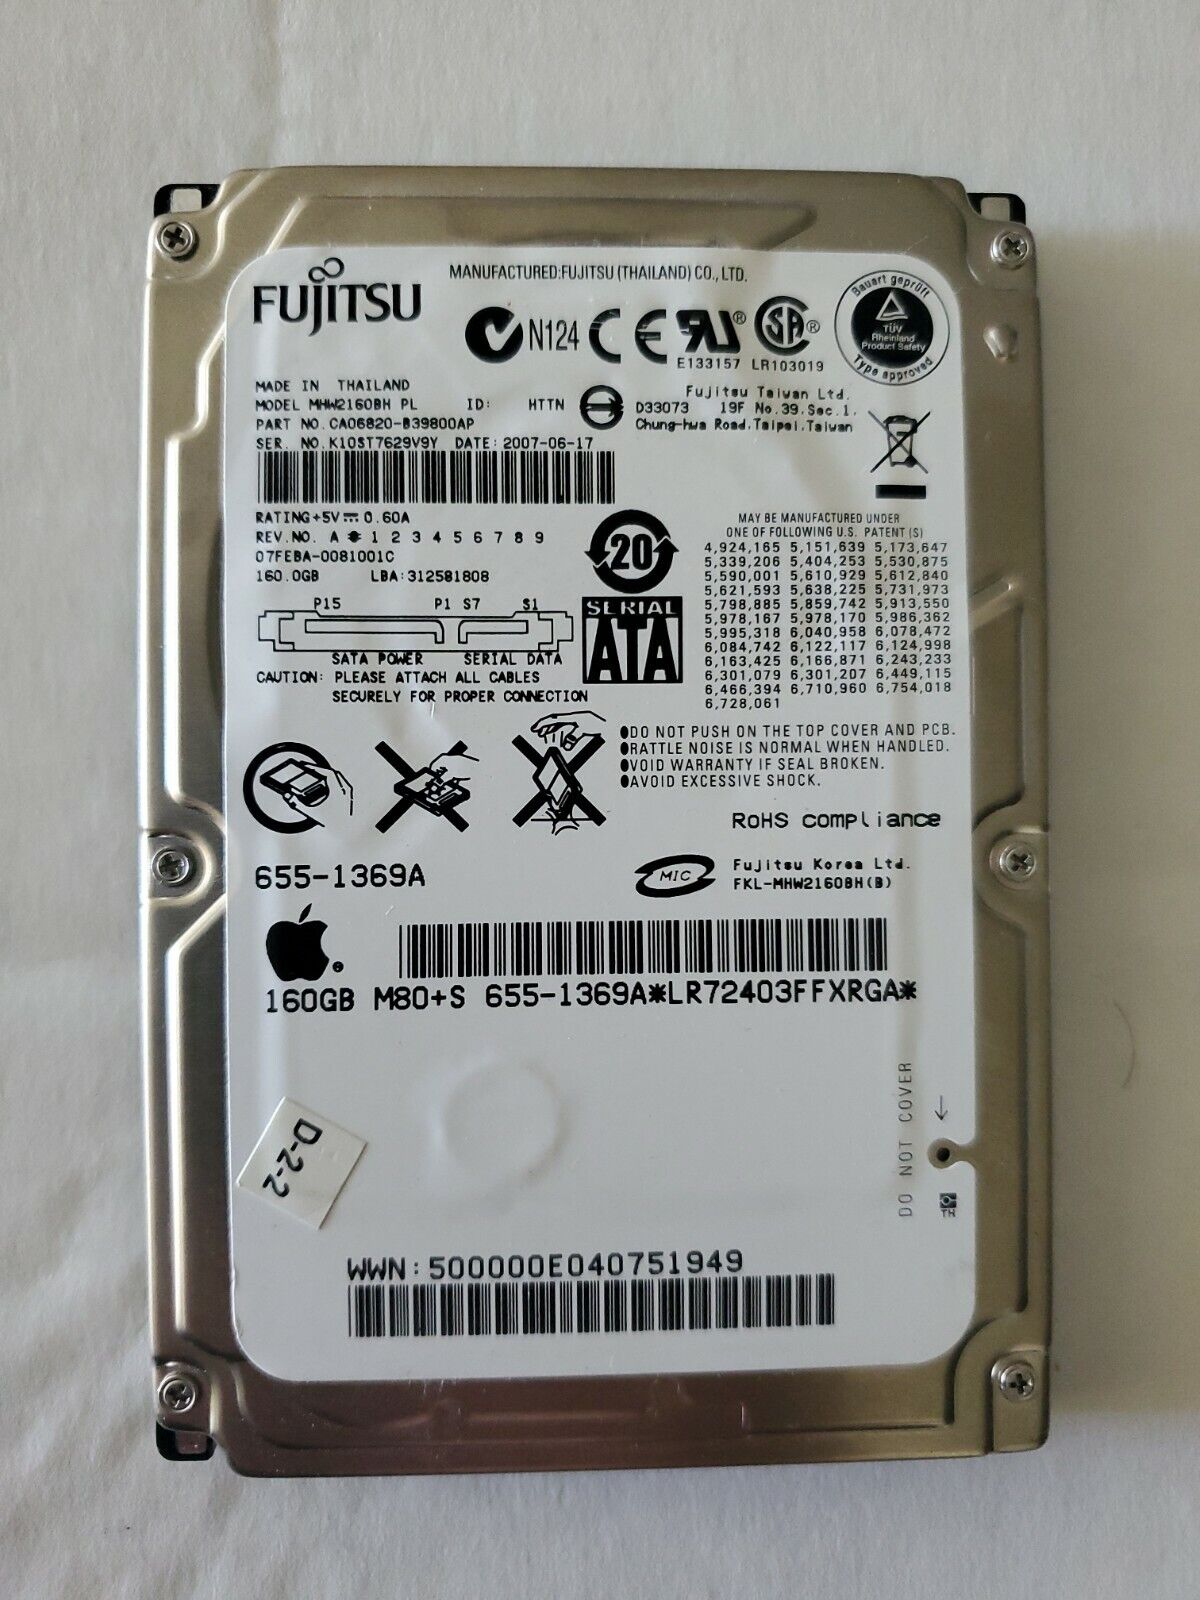 Fujitsu 160GB MHW2160BH PL 2.5